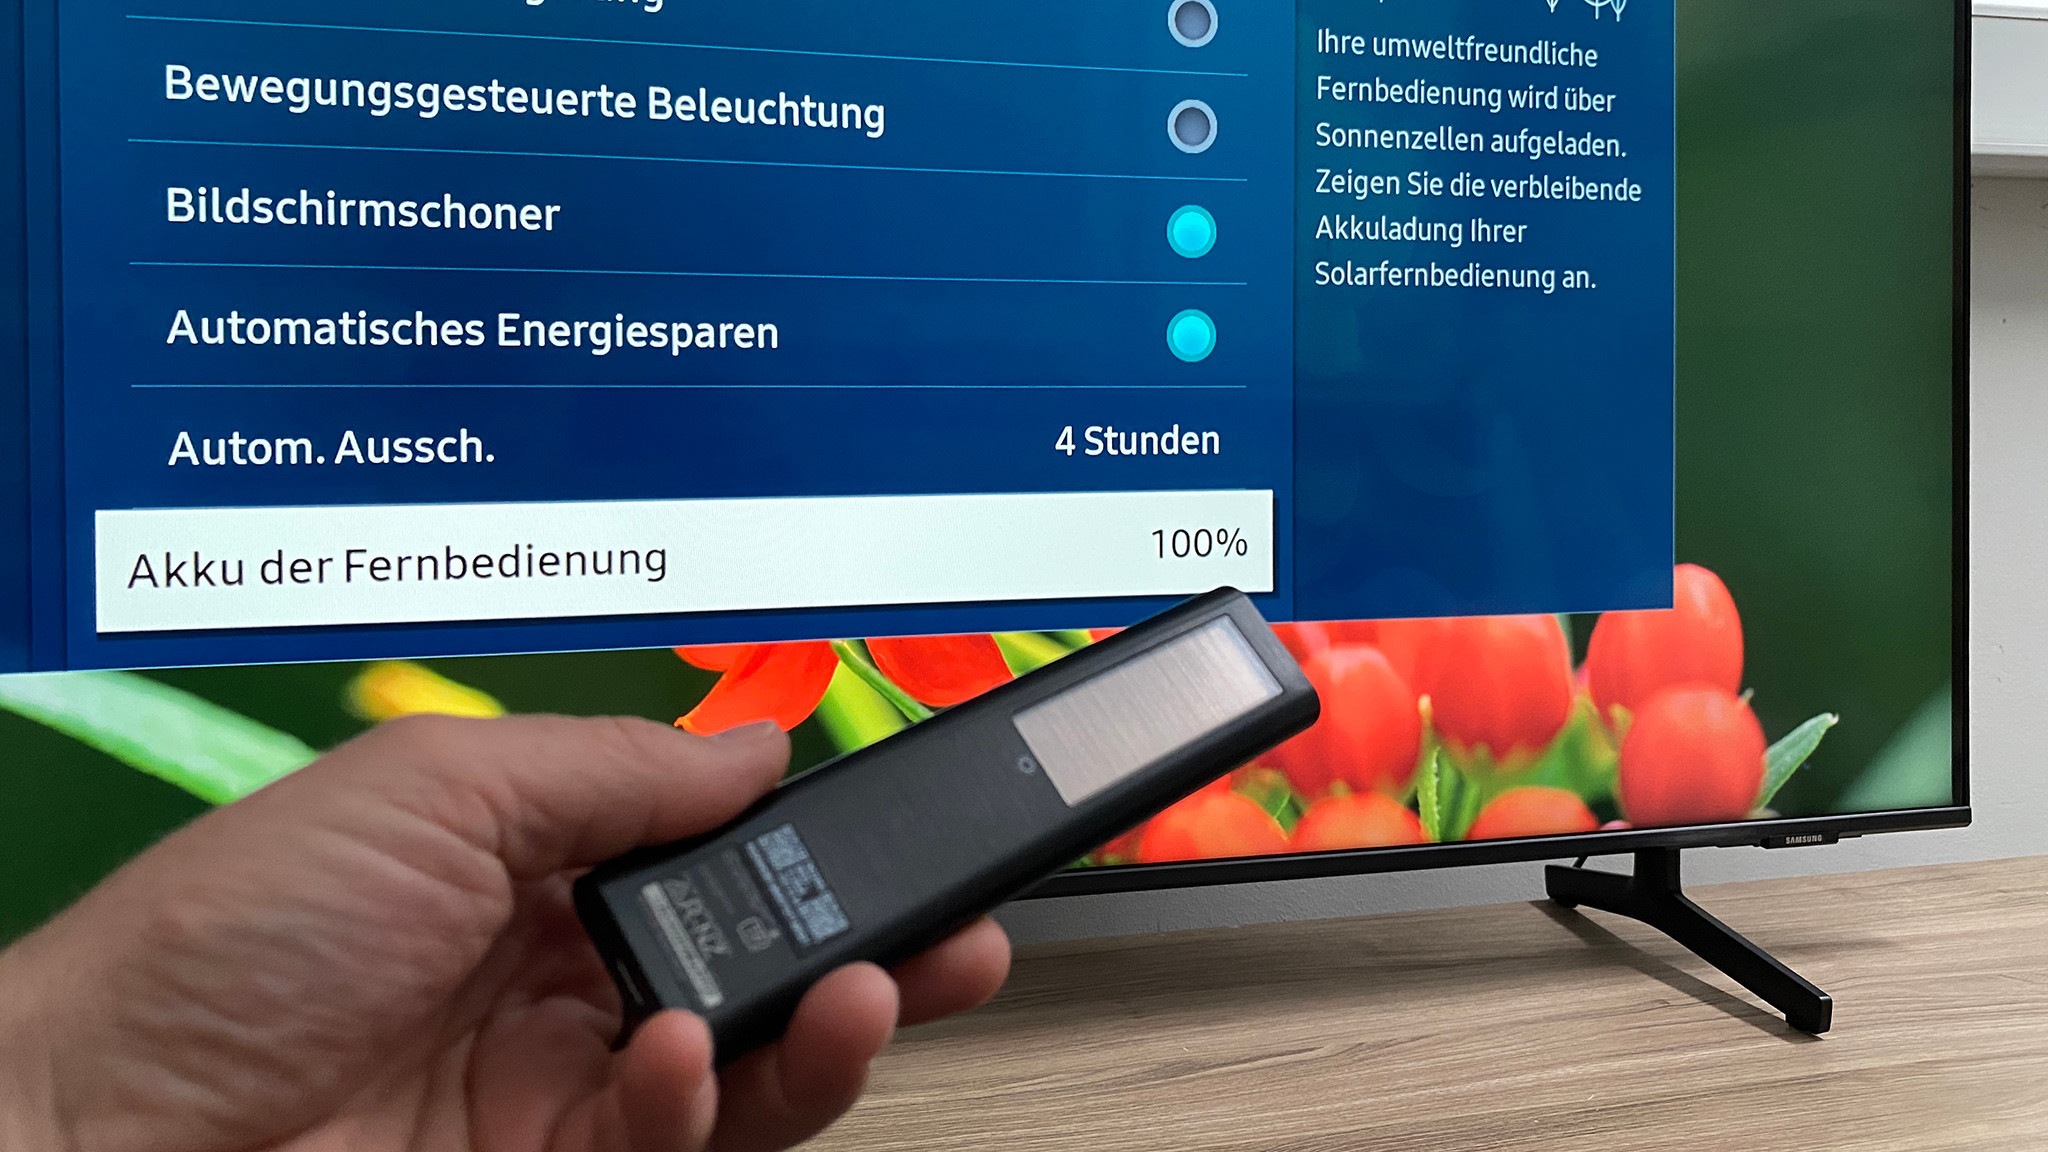 BU8079 fürs Mehr Geld im BILD Test: - geht COMPUTER Fernseher Samsung kaum